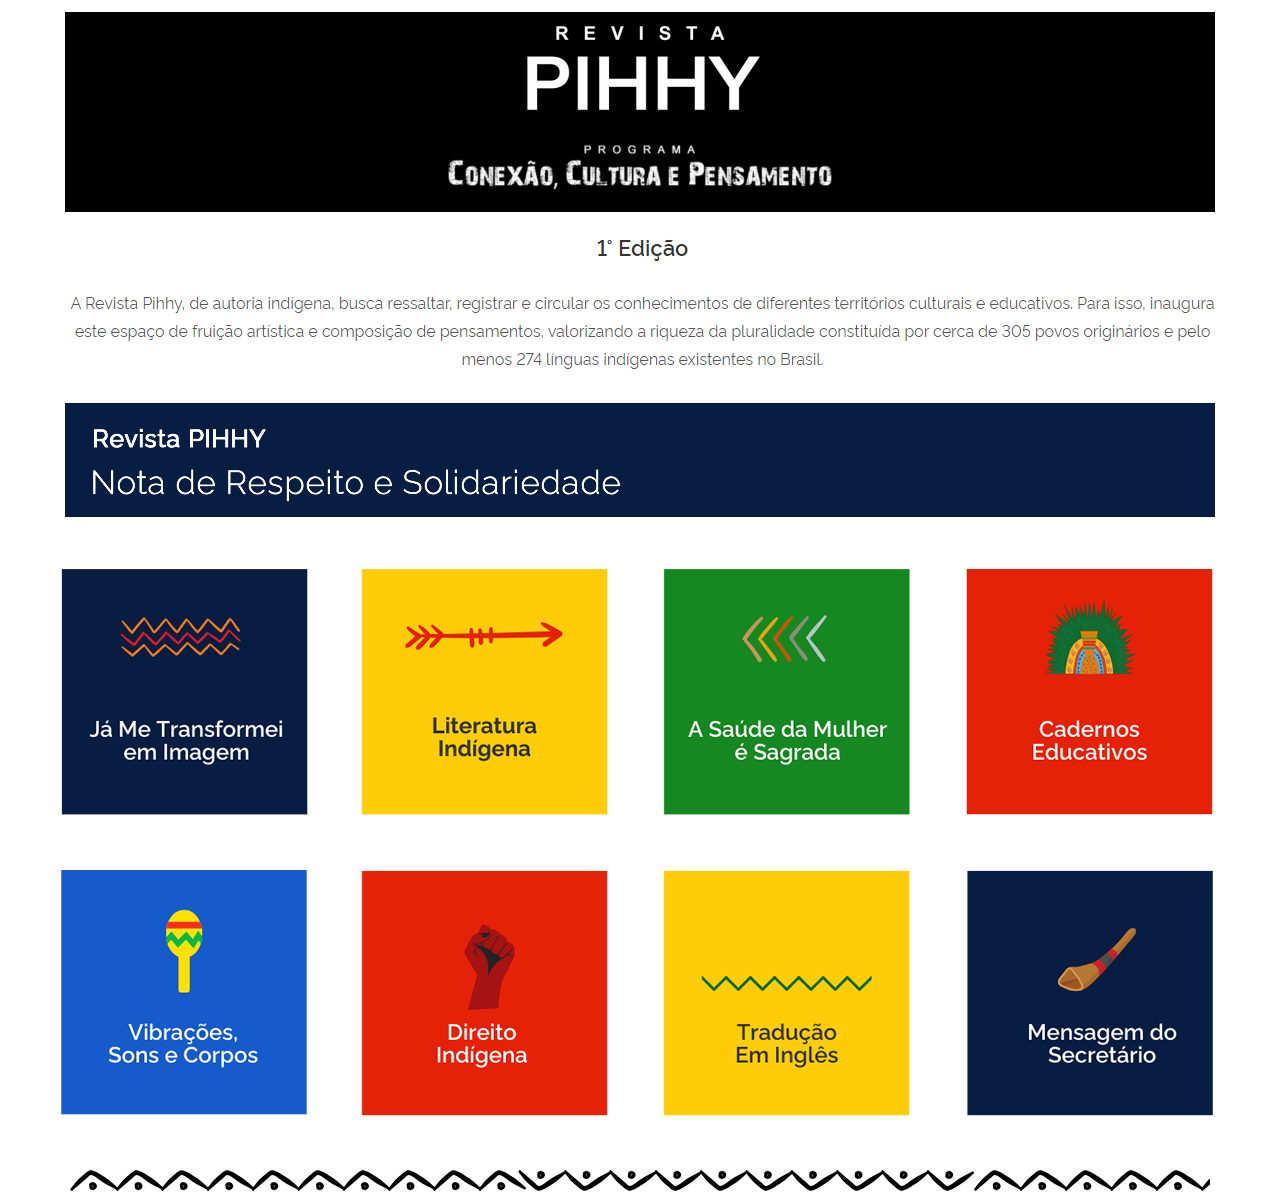 Pihhy-1 - Cards de categorias 20 Pihhy-1 - Cards de categorias